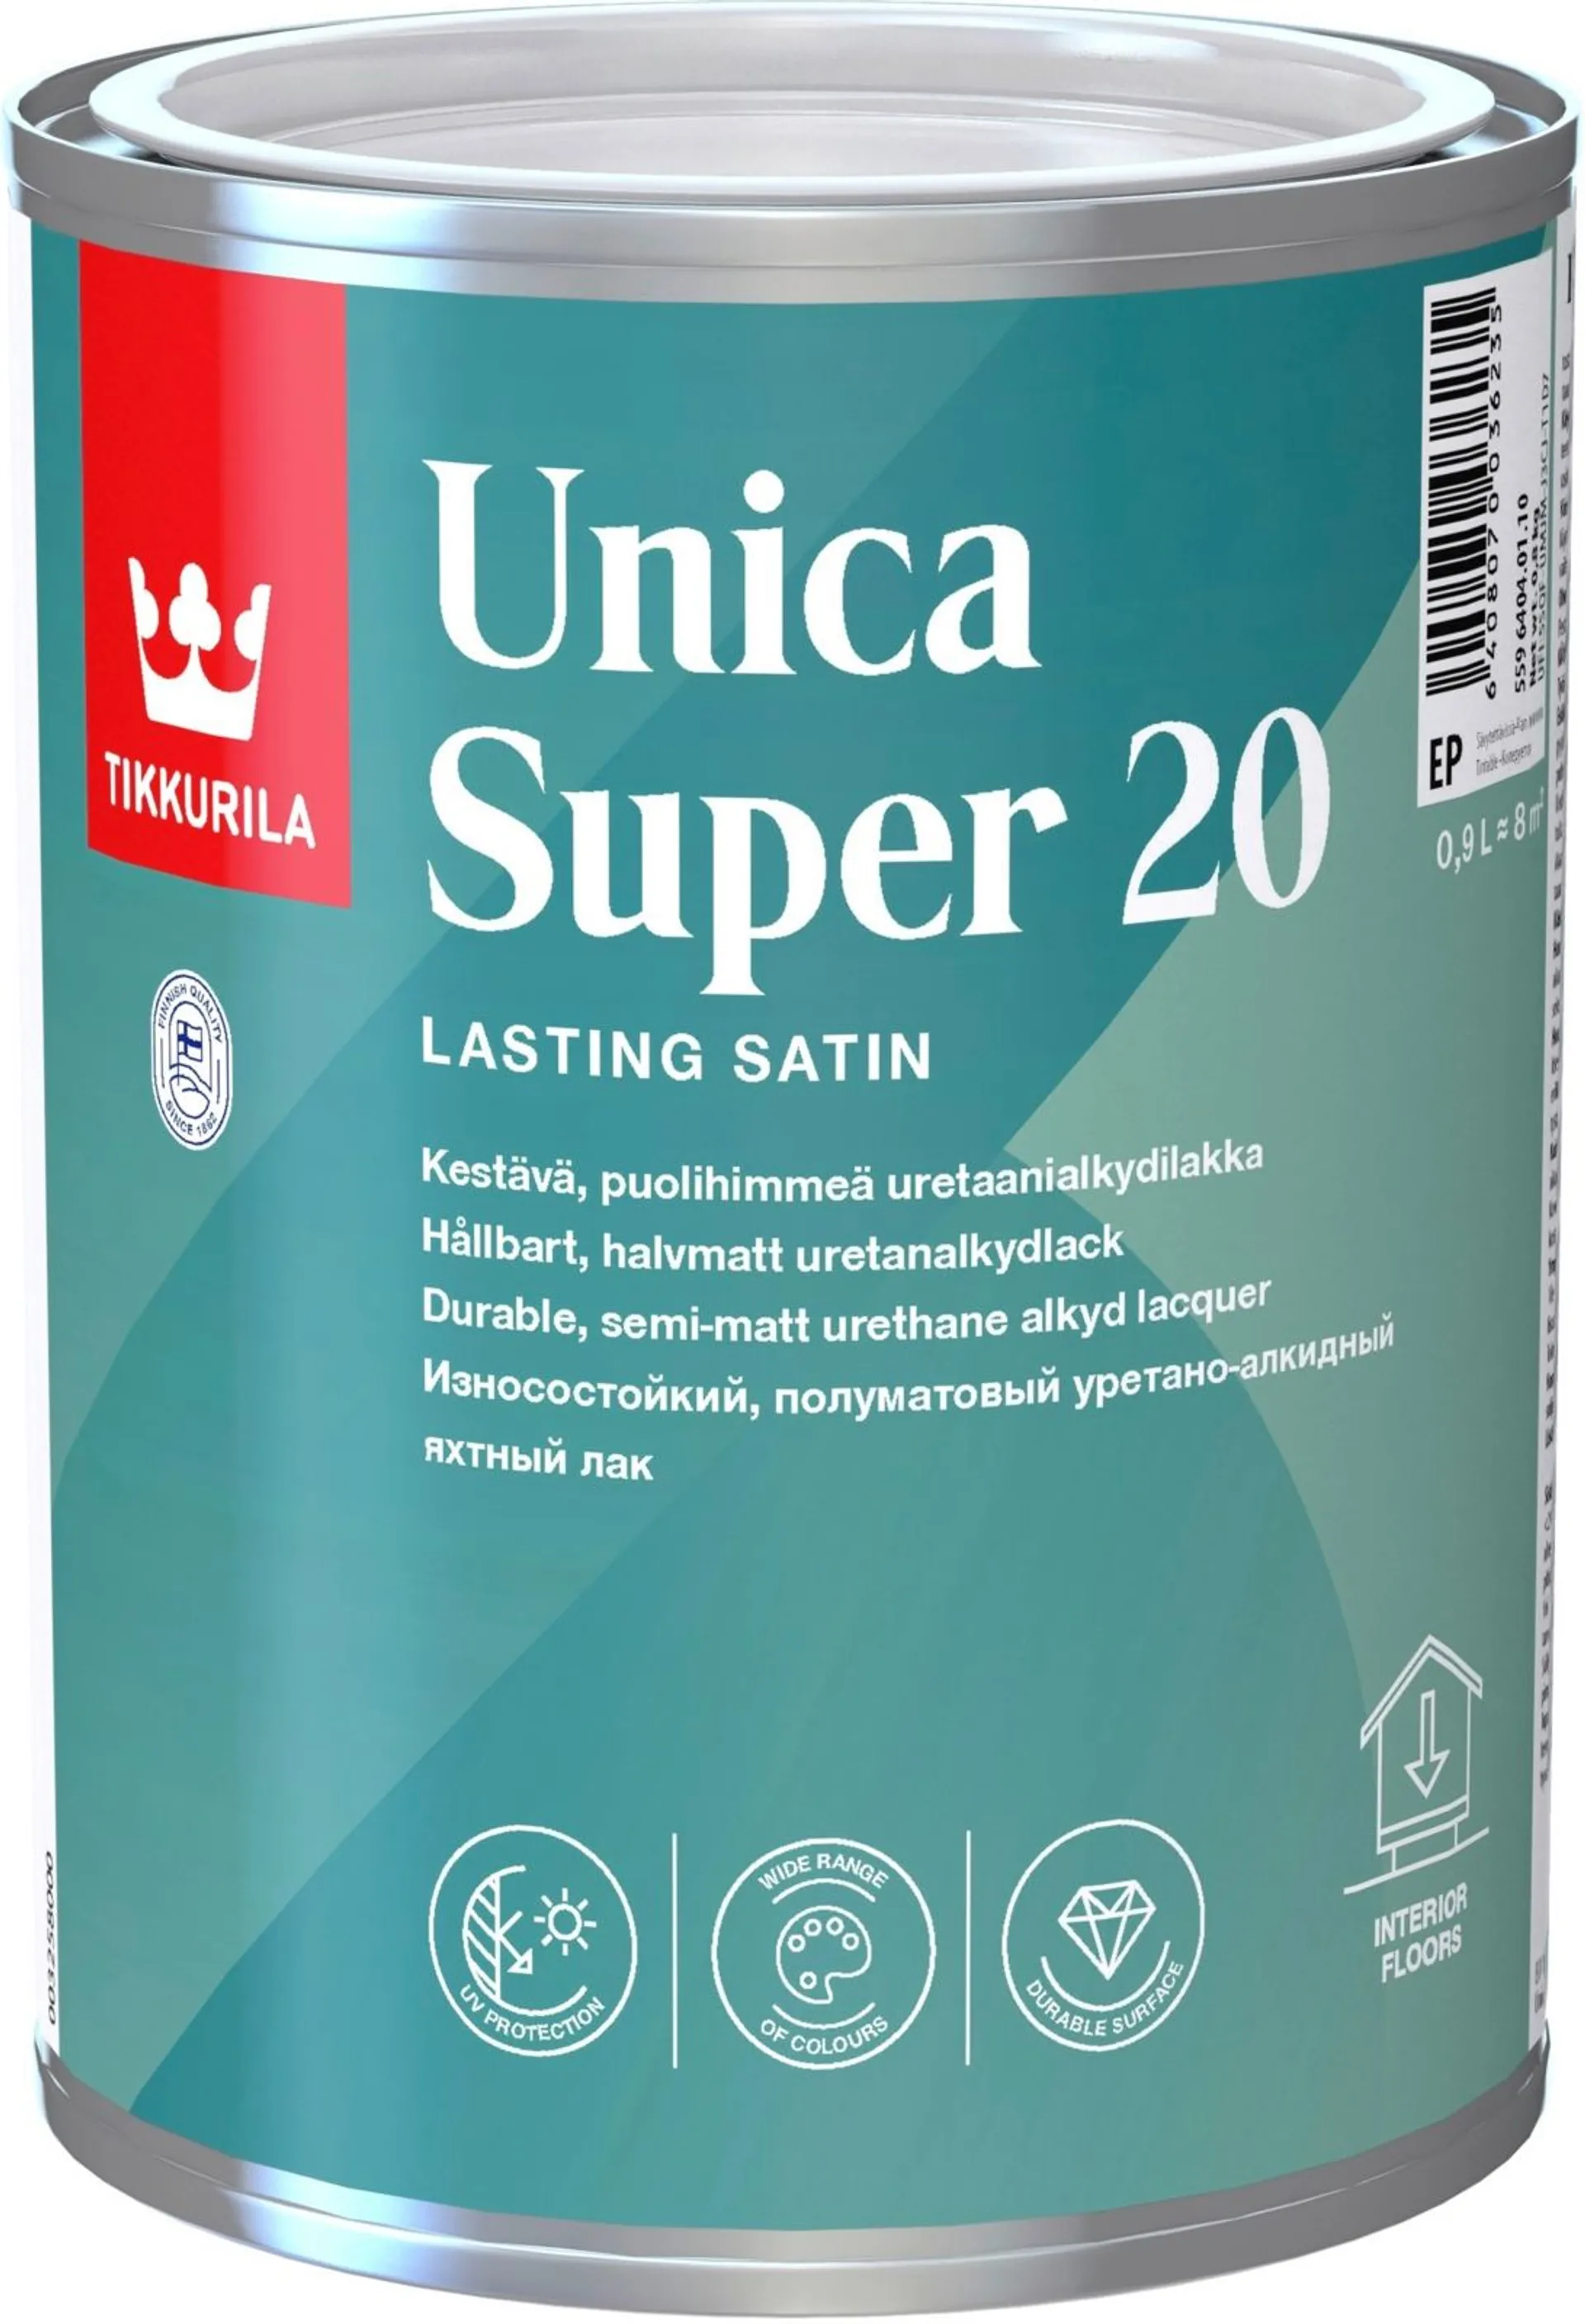 Tikkurila Unica Super 20 uretaanialkydilakka 0,9l sävytettävissä puolihimmeä